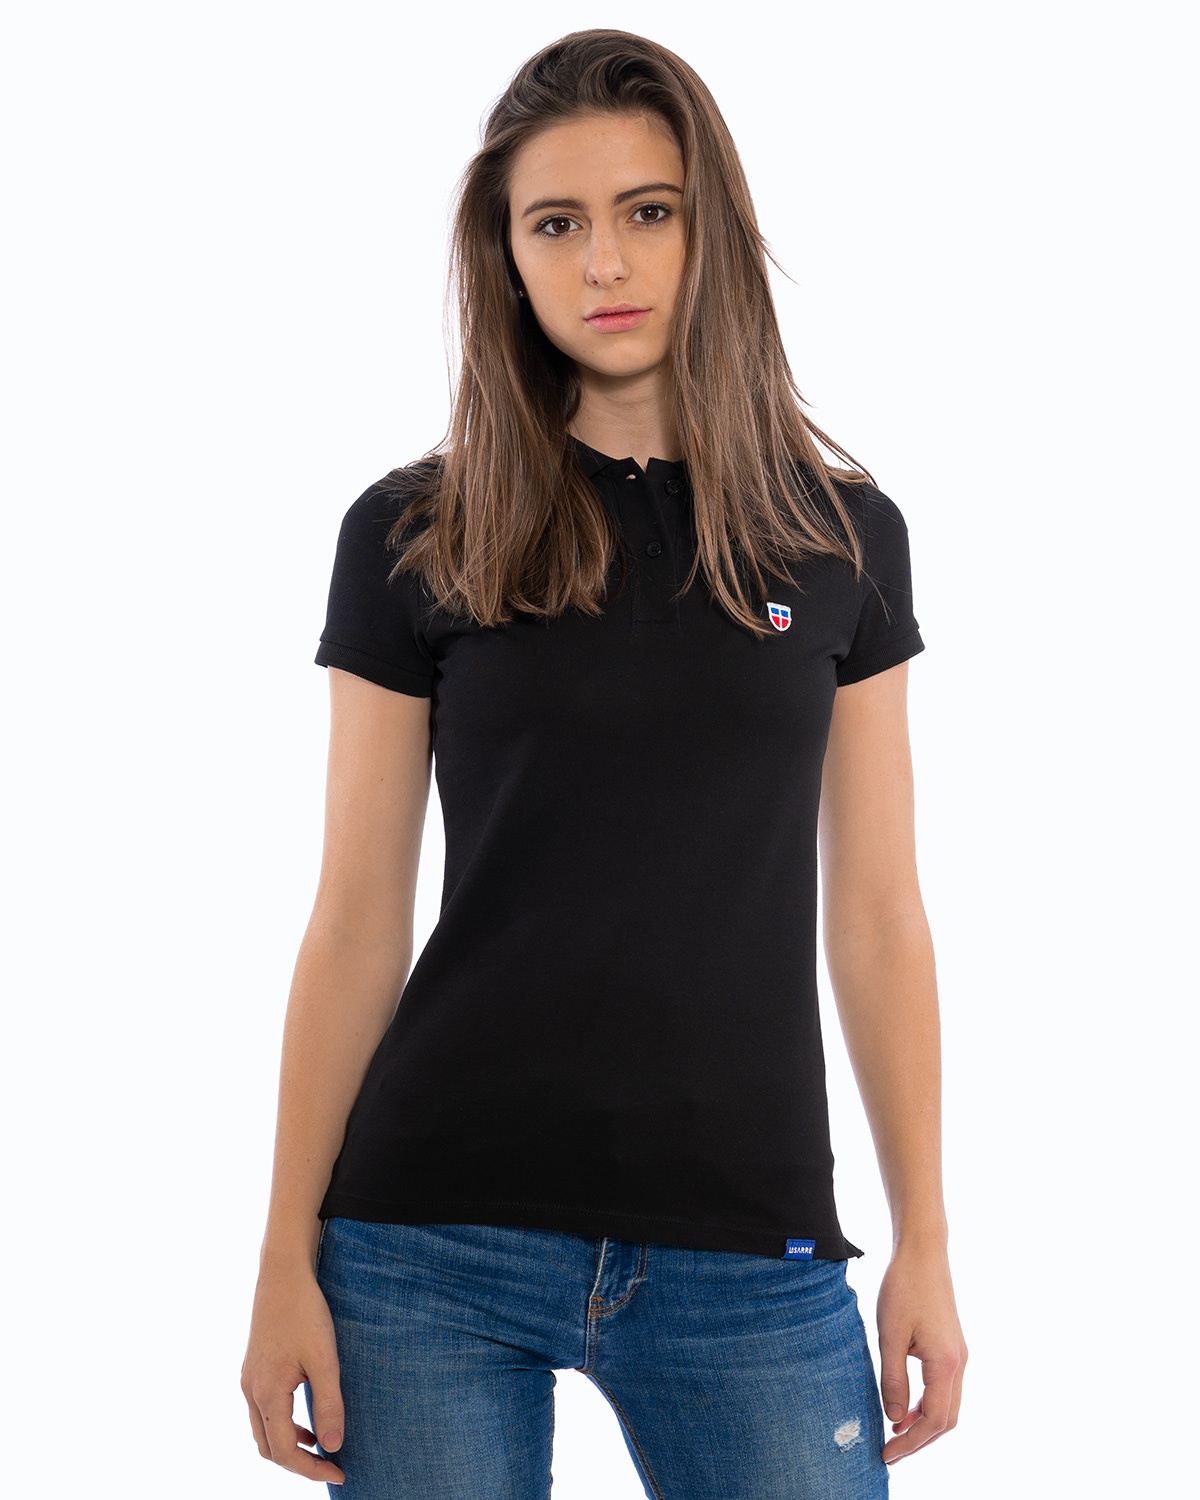 Junges weibliches Model in entspannter Pose im schwarzen Ladies-Polo-Shirt der Saarland-Marke LA SARRE. Auffällig sind das blaue LA SARRE Saumlabel und das Sarre-Wappen als Stickerei auf der Brust.